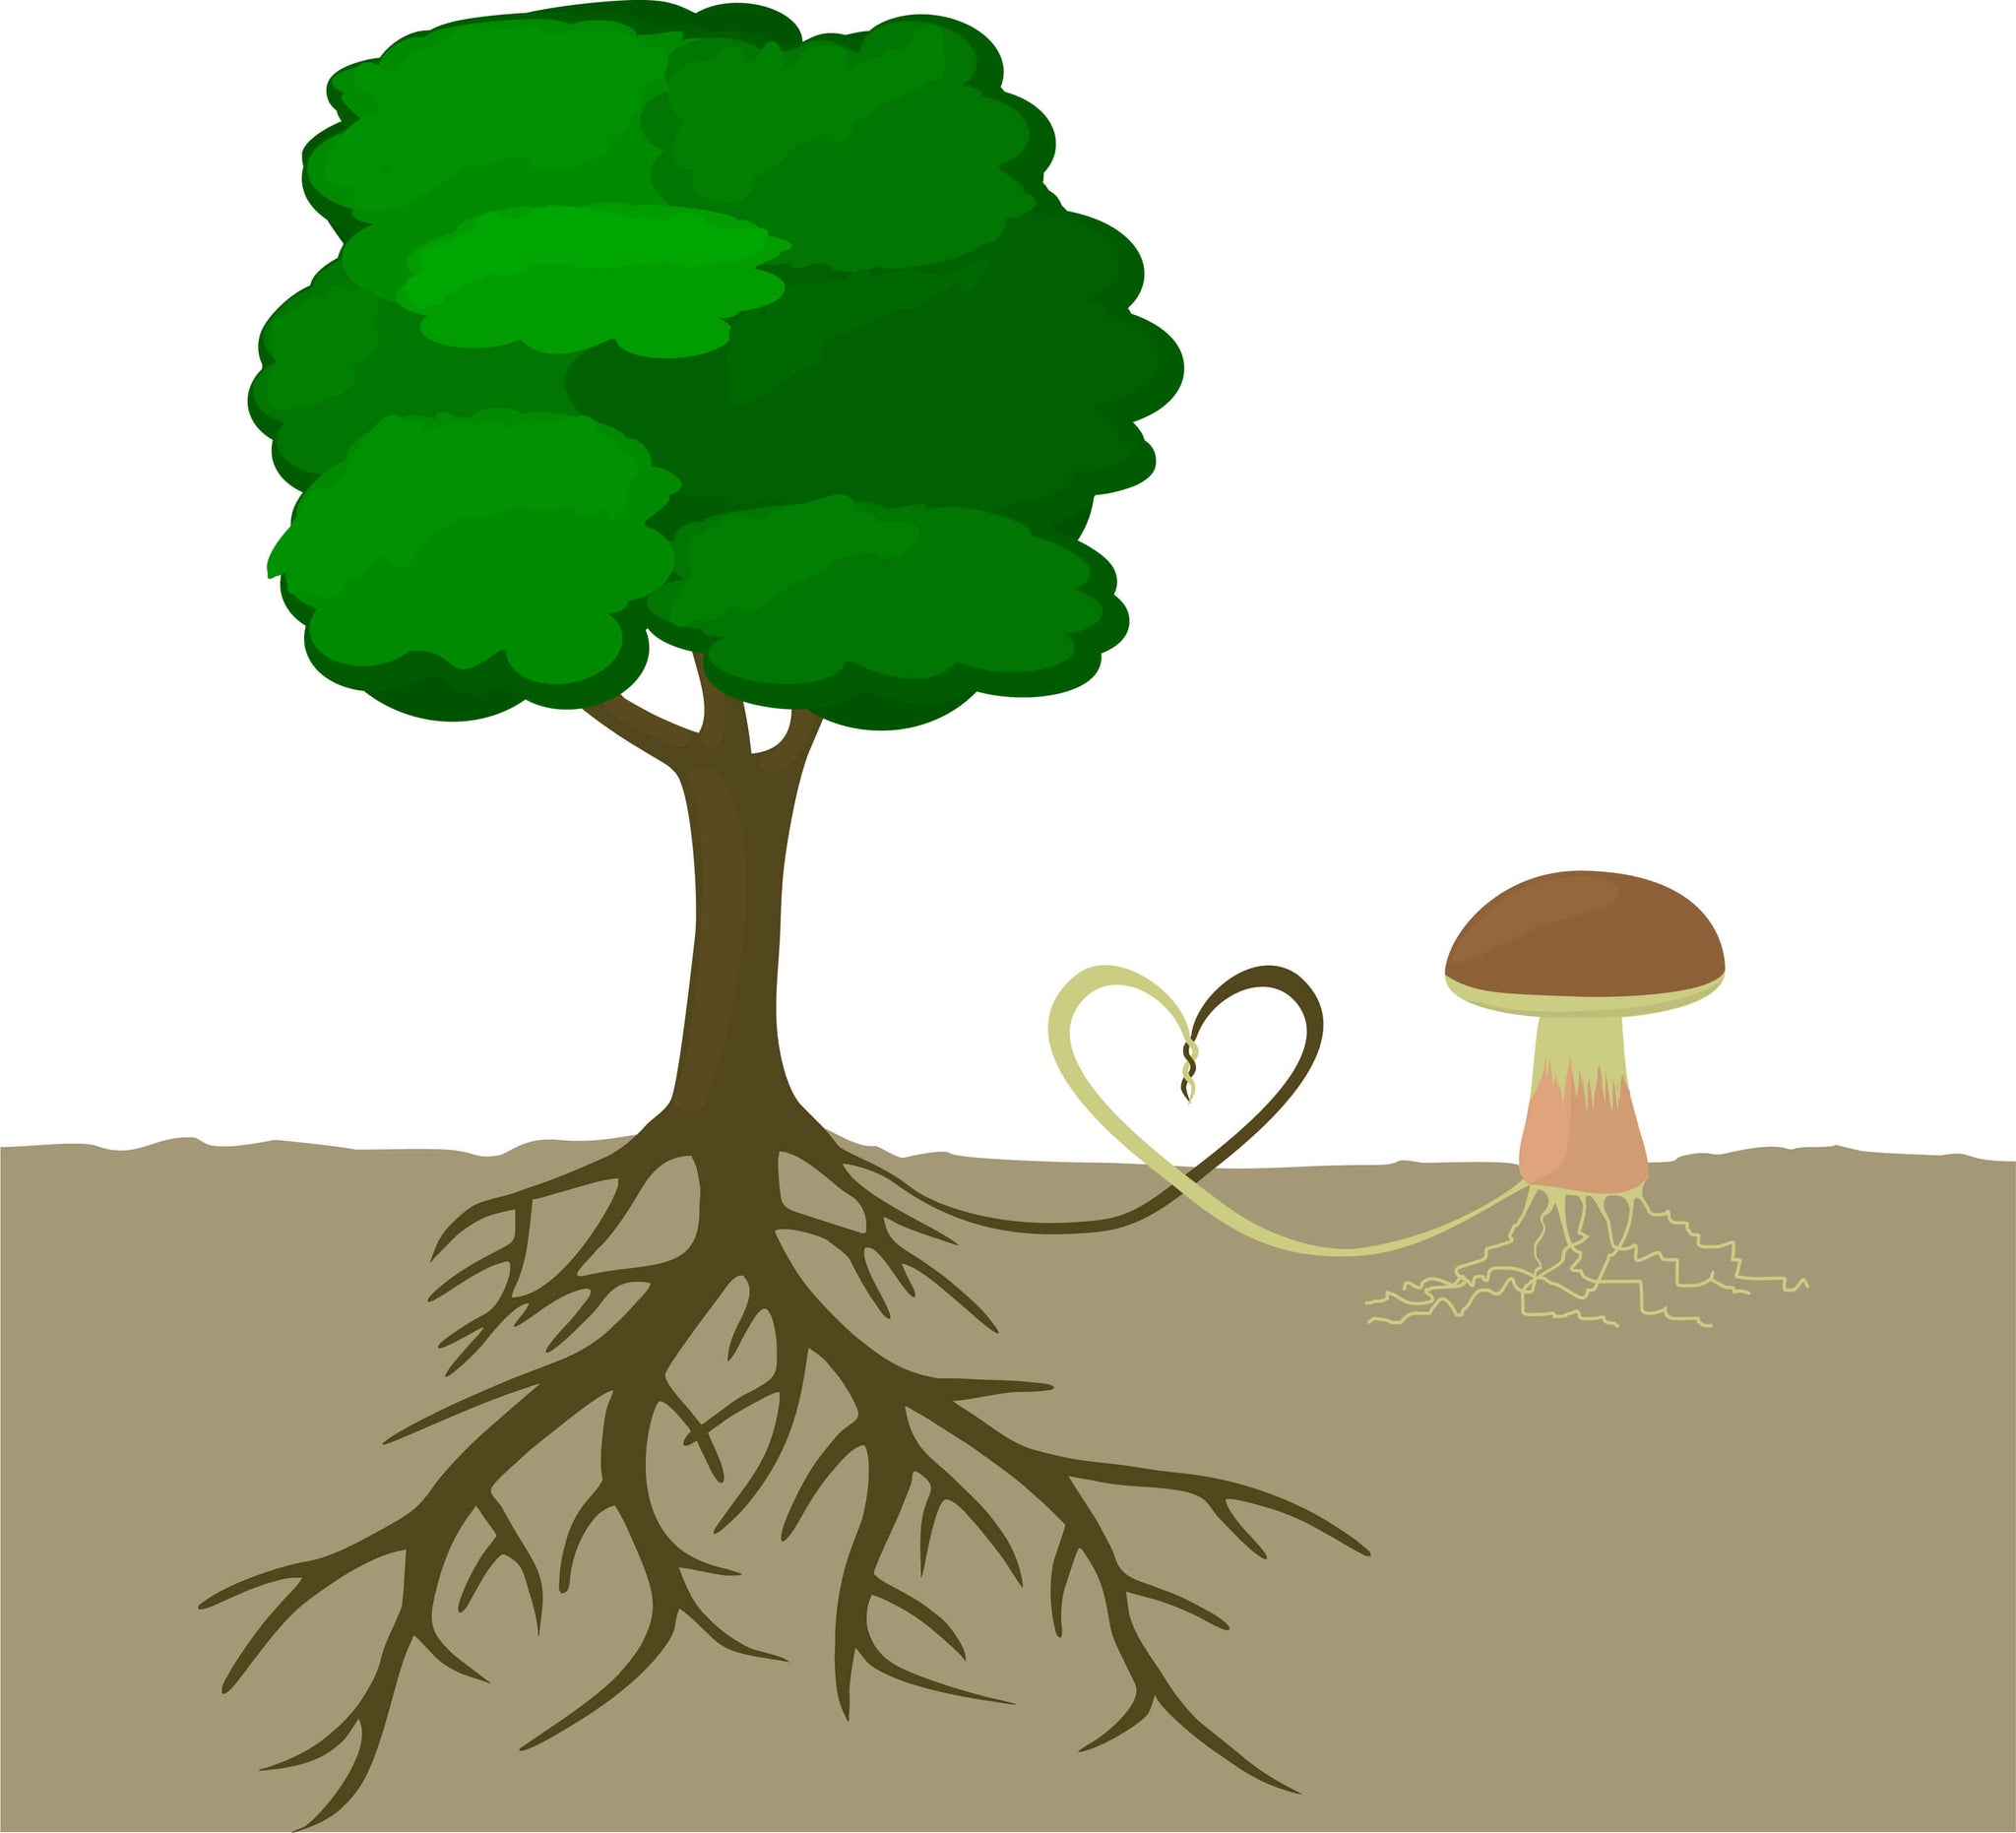 cartoon image of tree roots connecting with mushroom roots (mushroom mycelium)